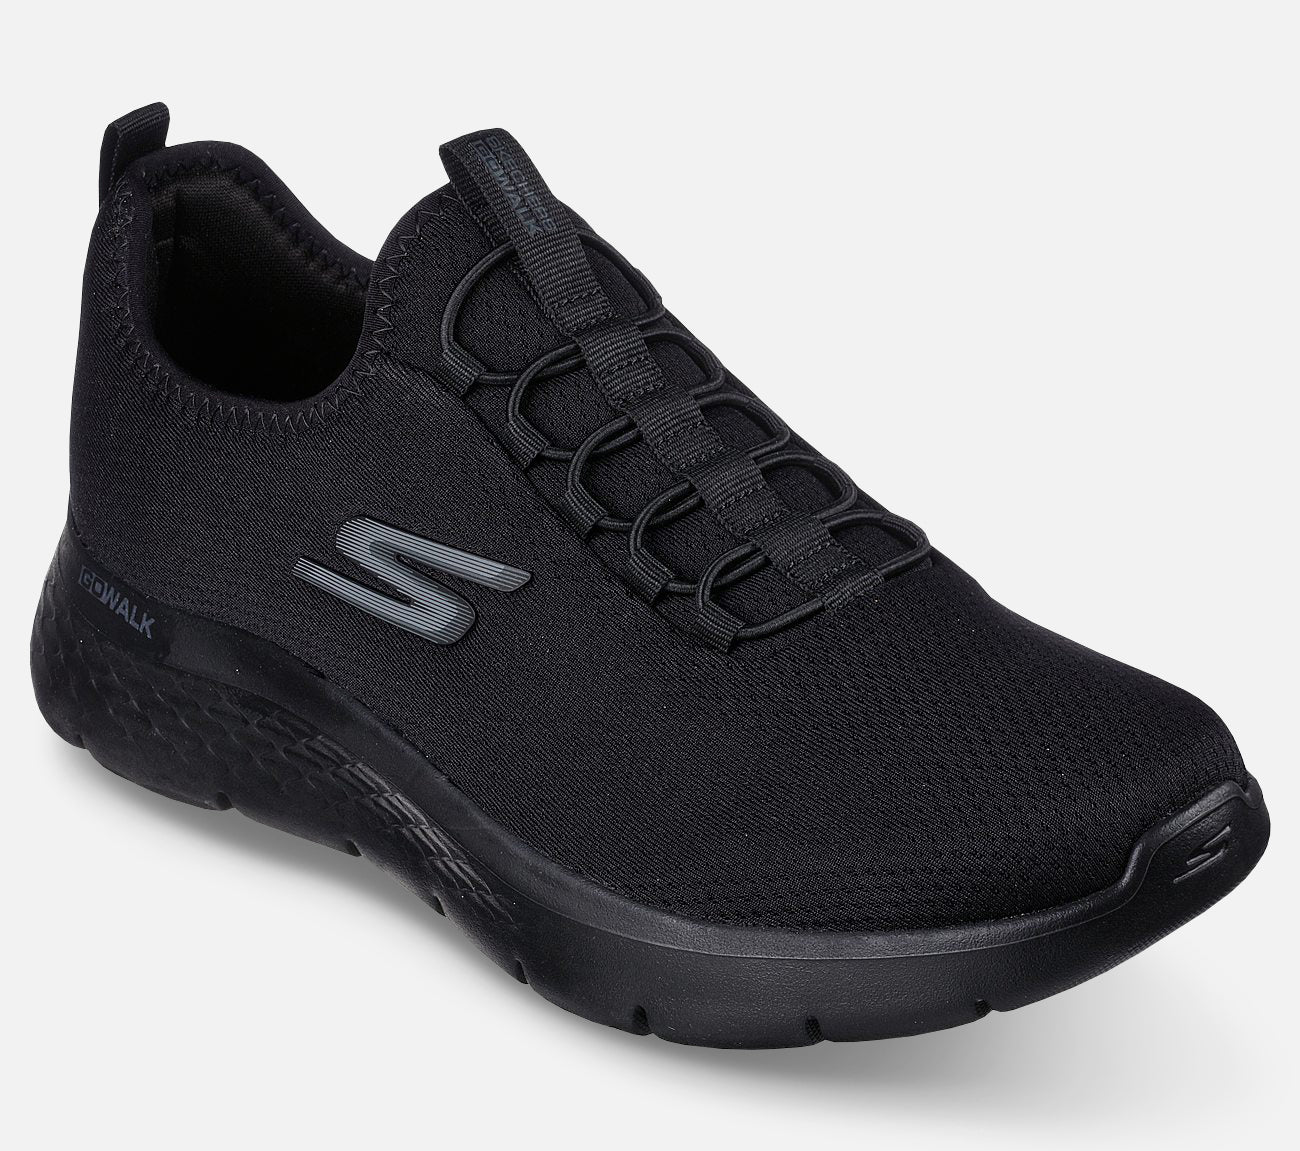 GO WALK Flex - Ultra Shoe Skechers